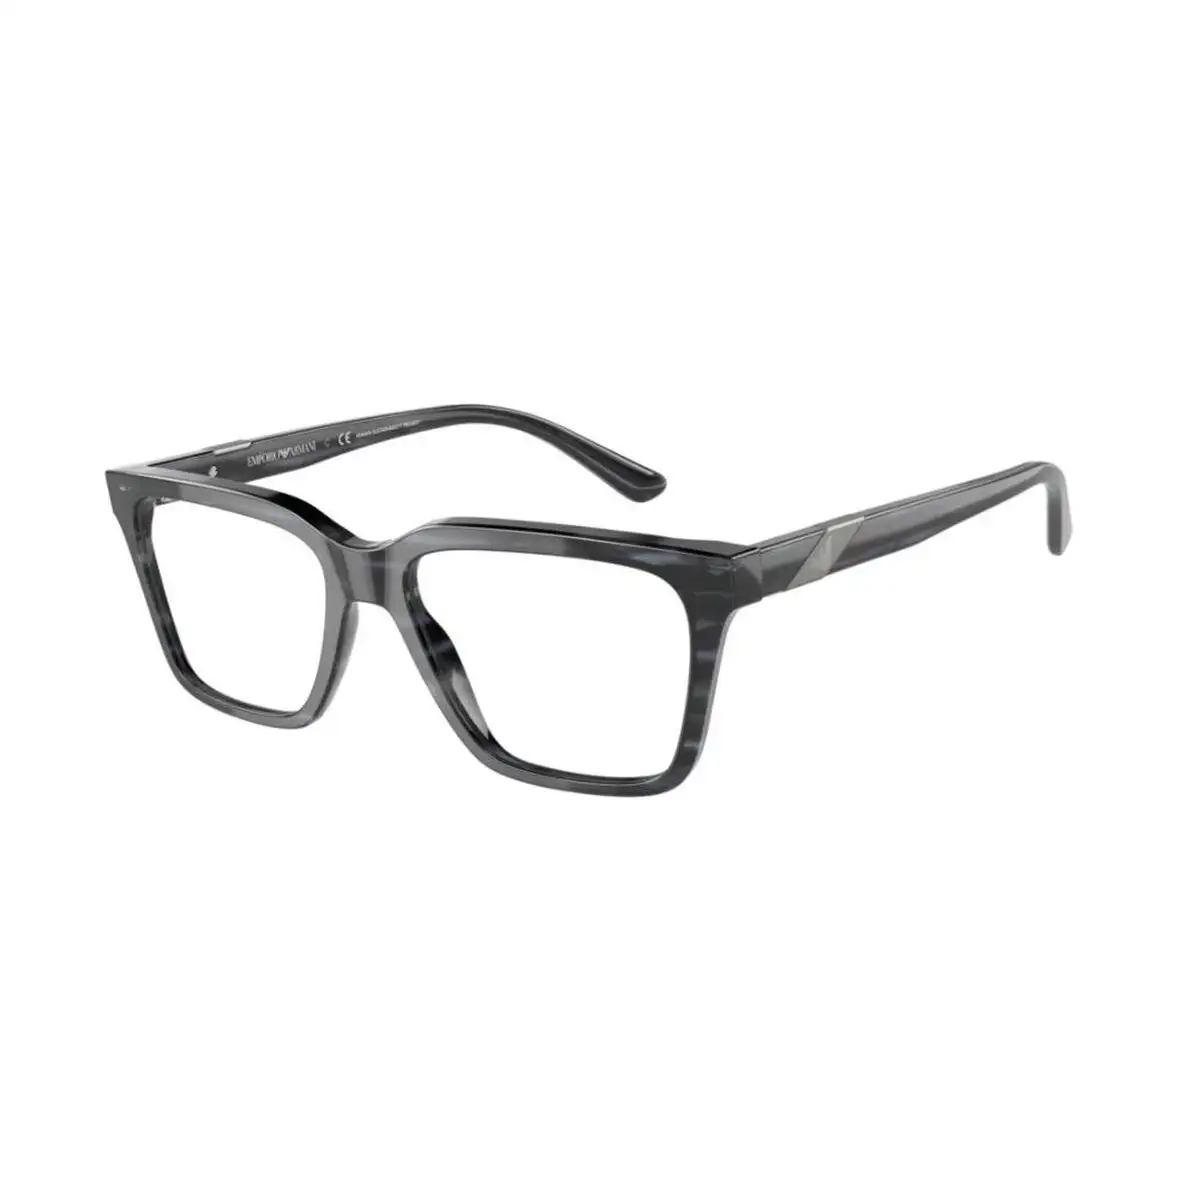 Monture de lunettes homme emporio armani ea 3194_6033. Bienvenue sur DIAYTAR SENEGAL - Où Chaque Détail compte. Plongez dans notre univers et choisissez des produits qui ajoutent de l'éclat et de la joie à votre quotidien.